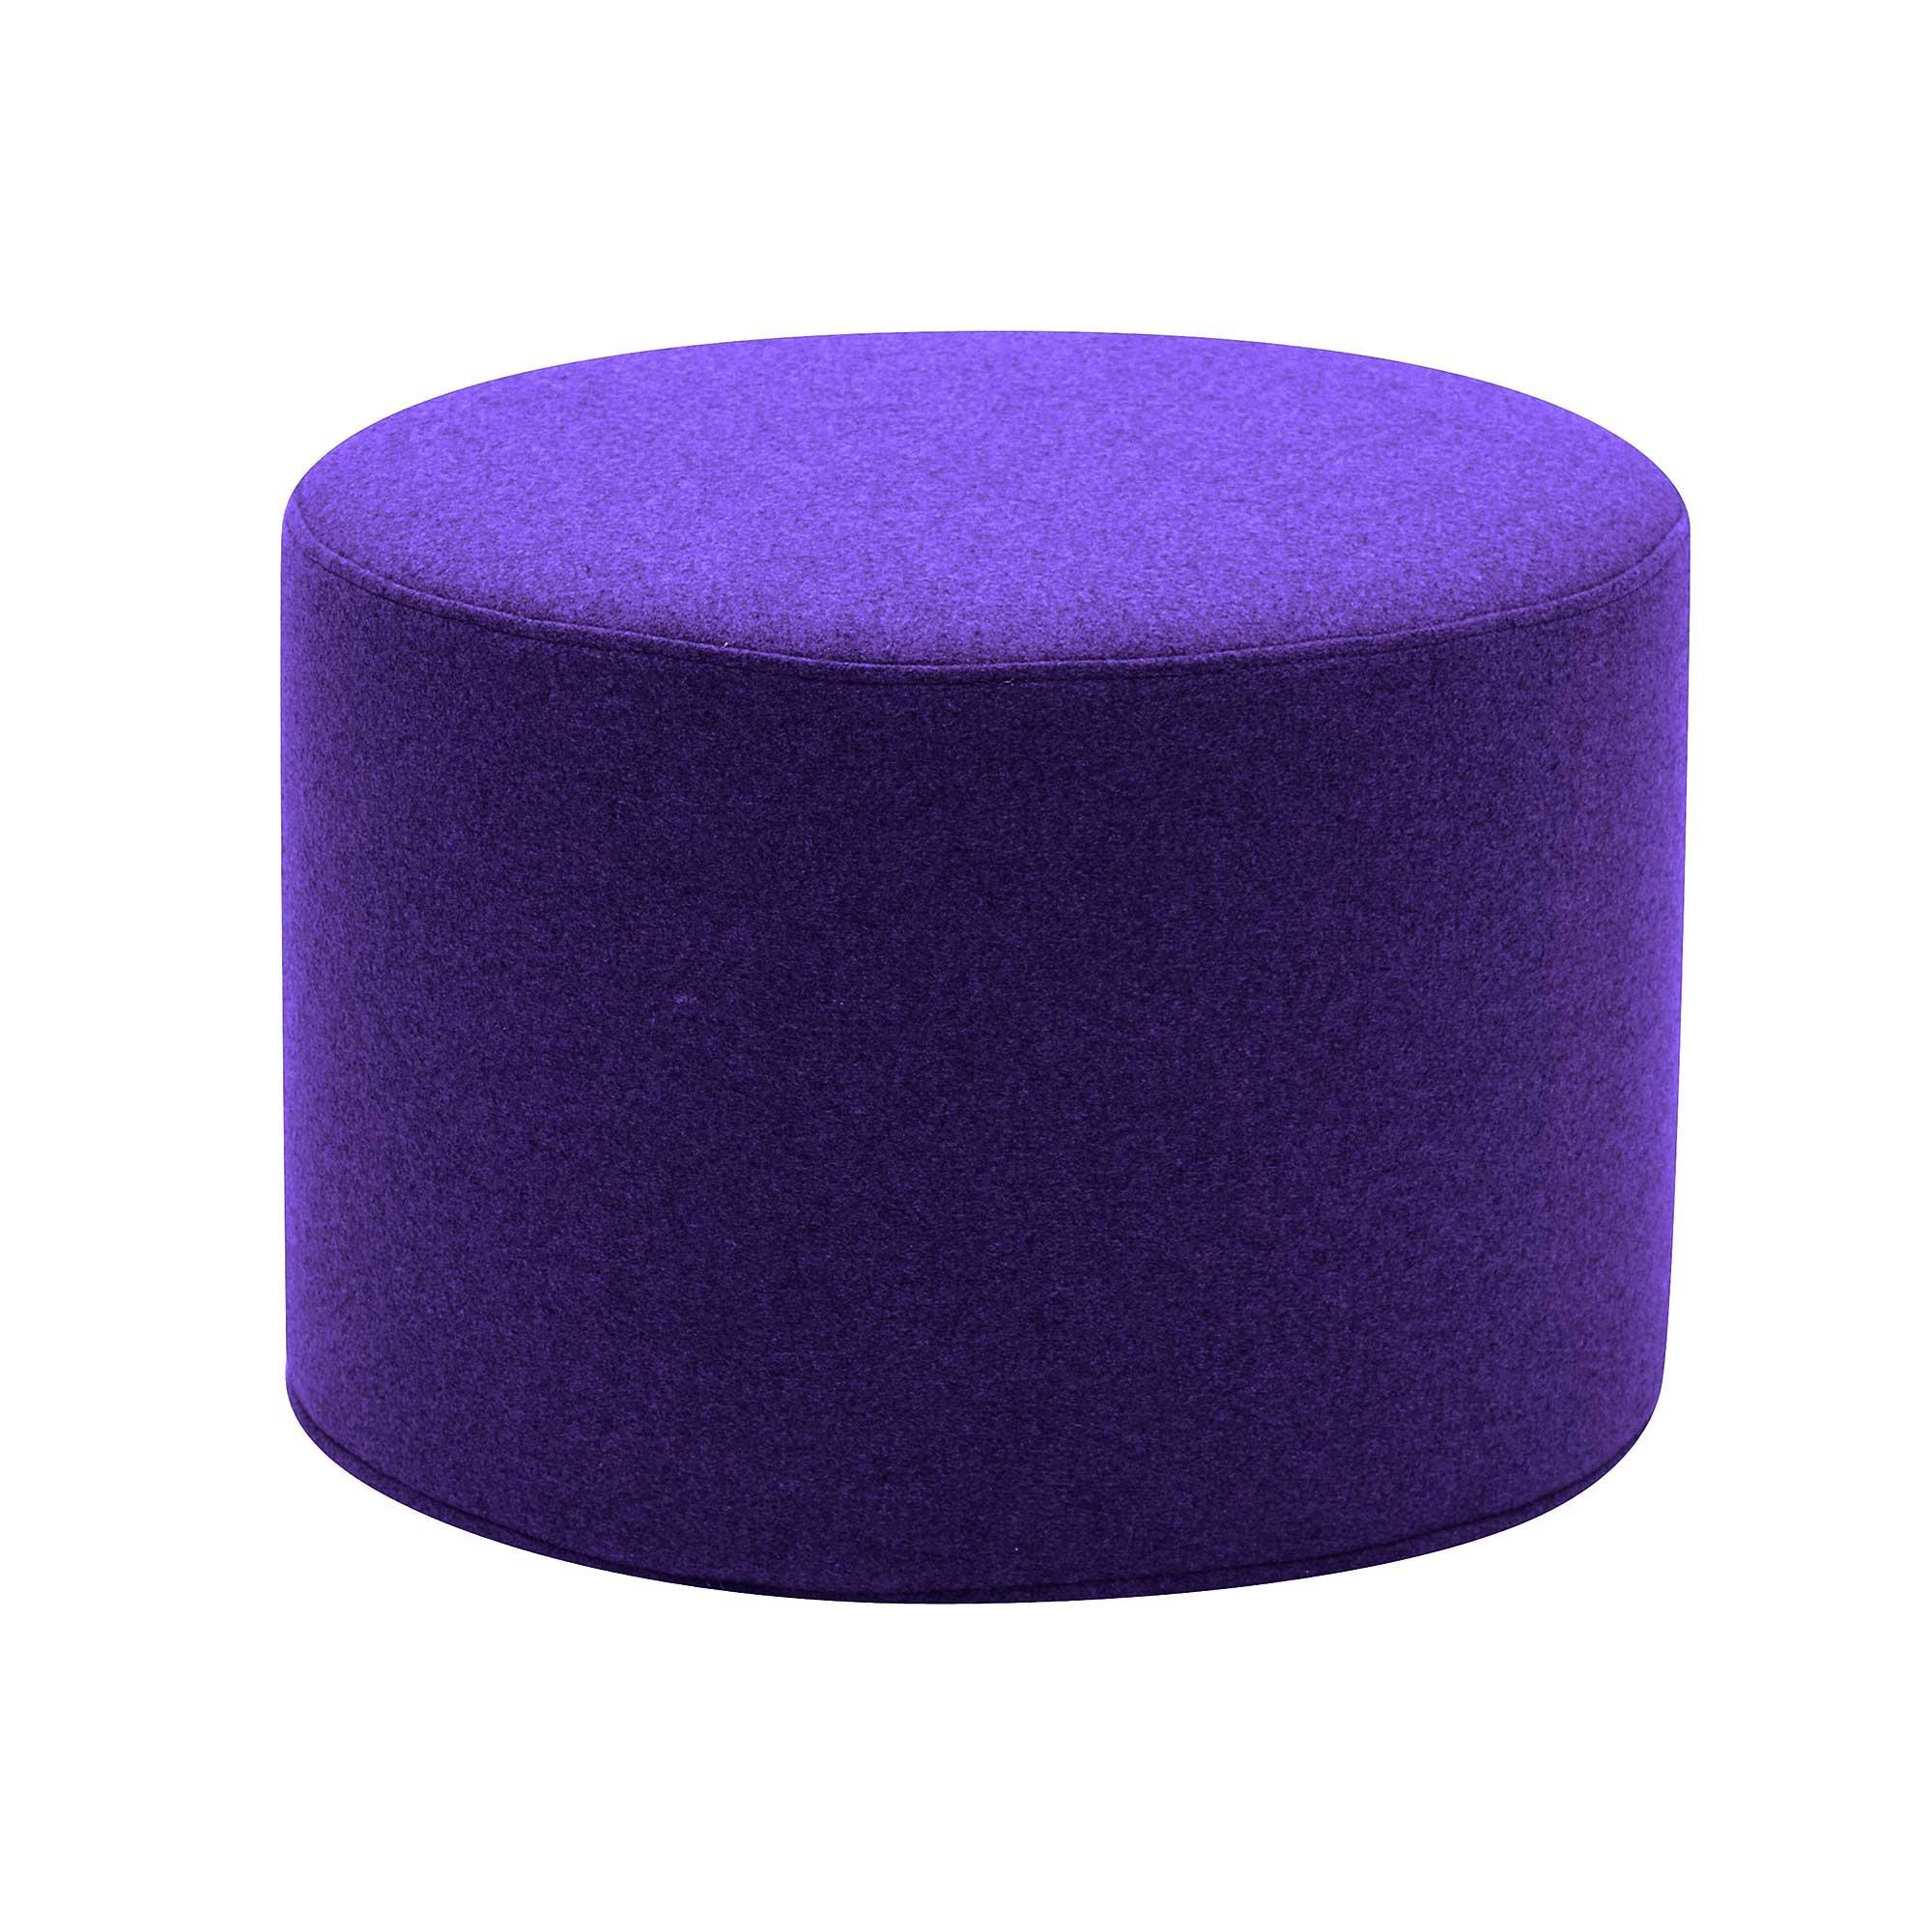 softline - tabouret / table d'appoint drum s - violet/etoffe felt 581/h x ø 30x45cm